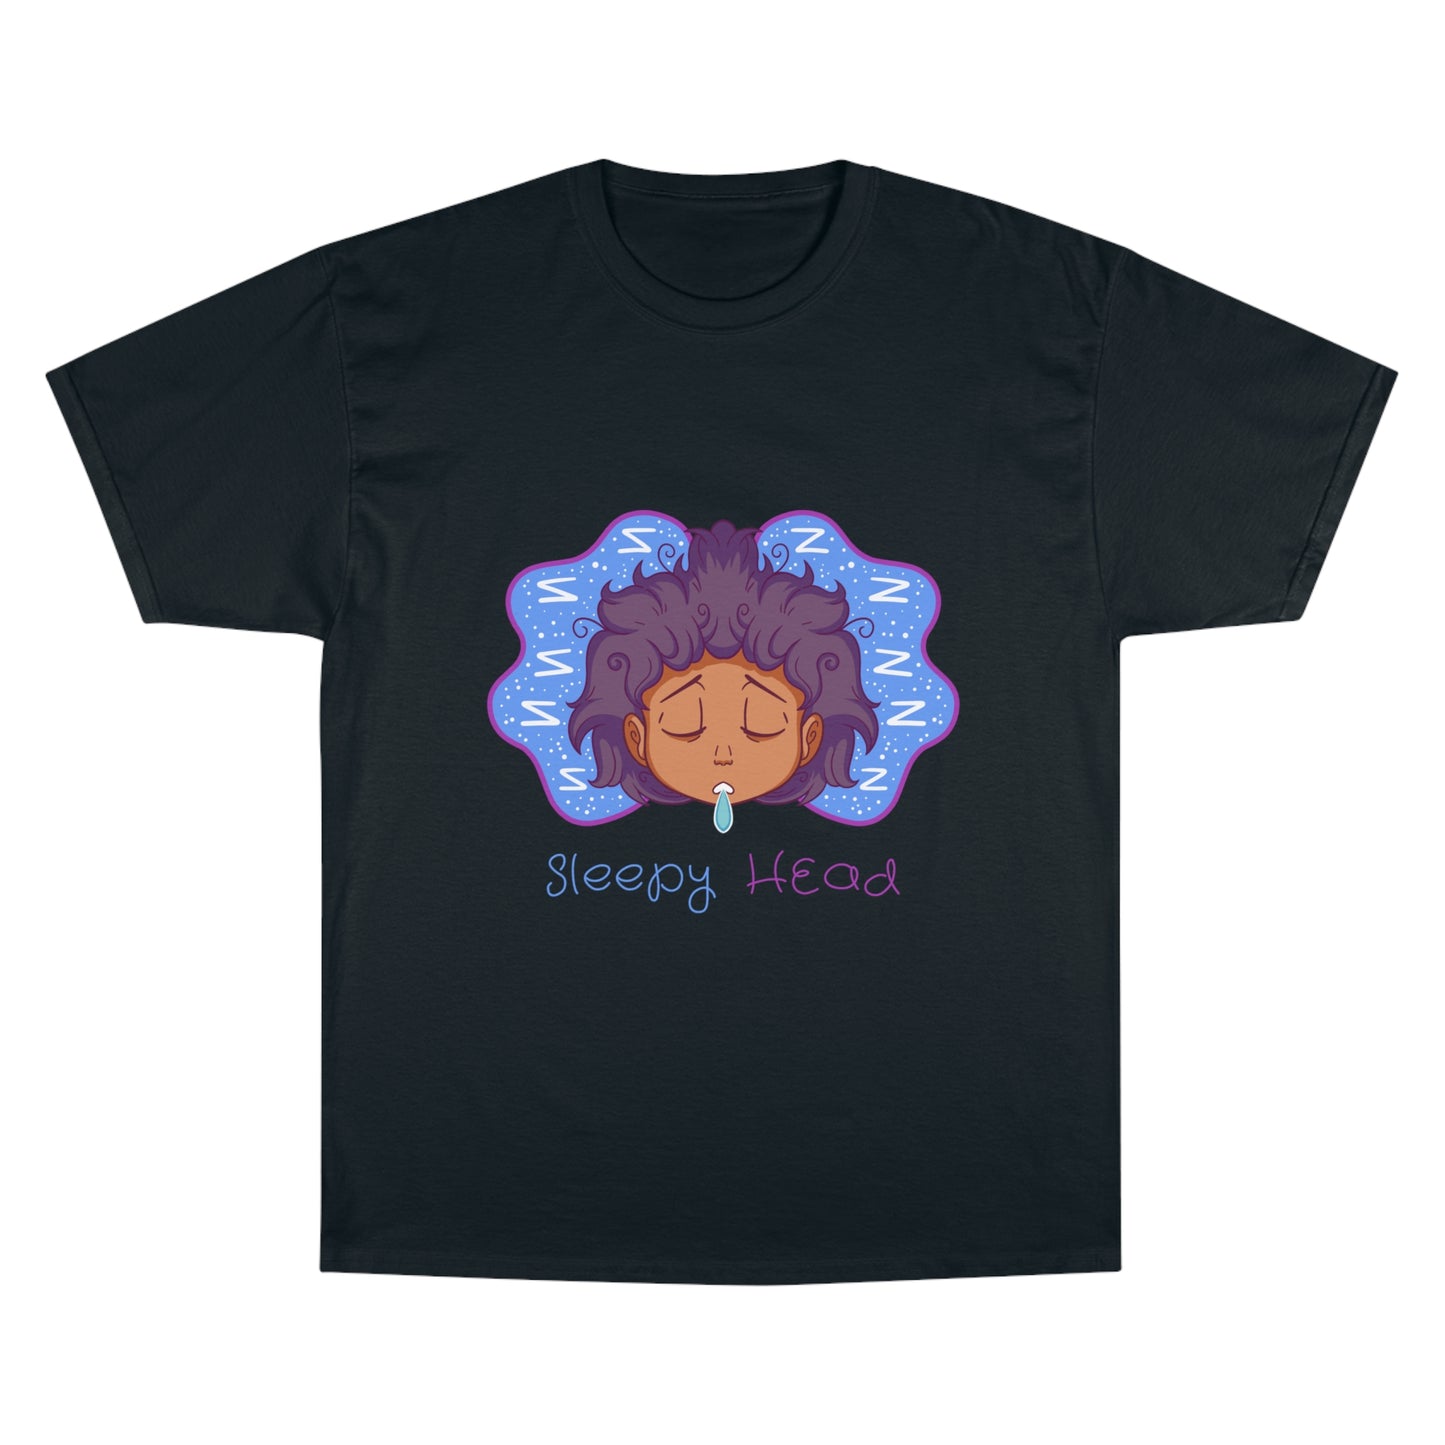 Sleepy Head T-Shirt